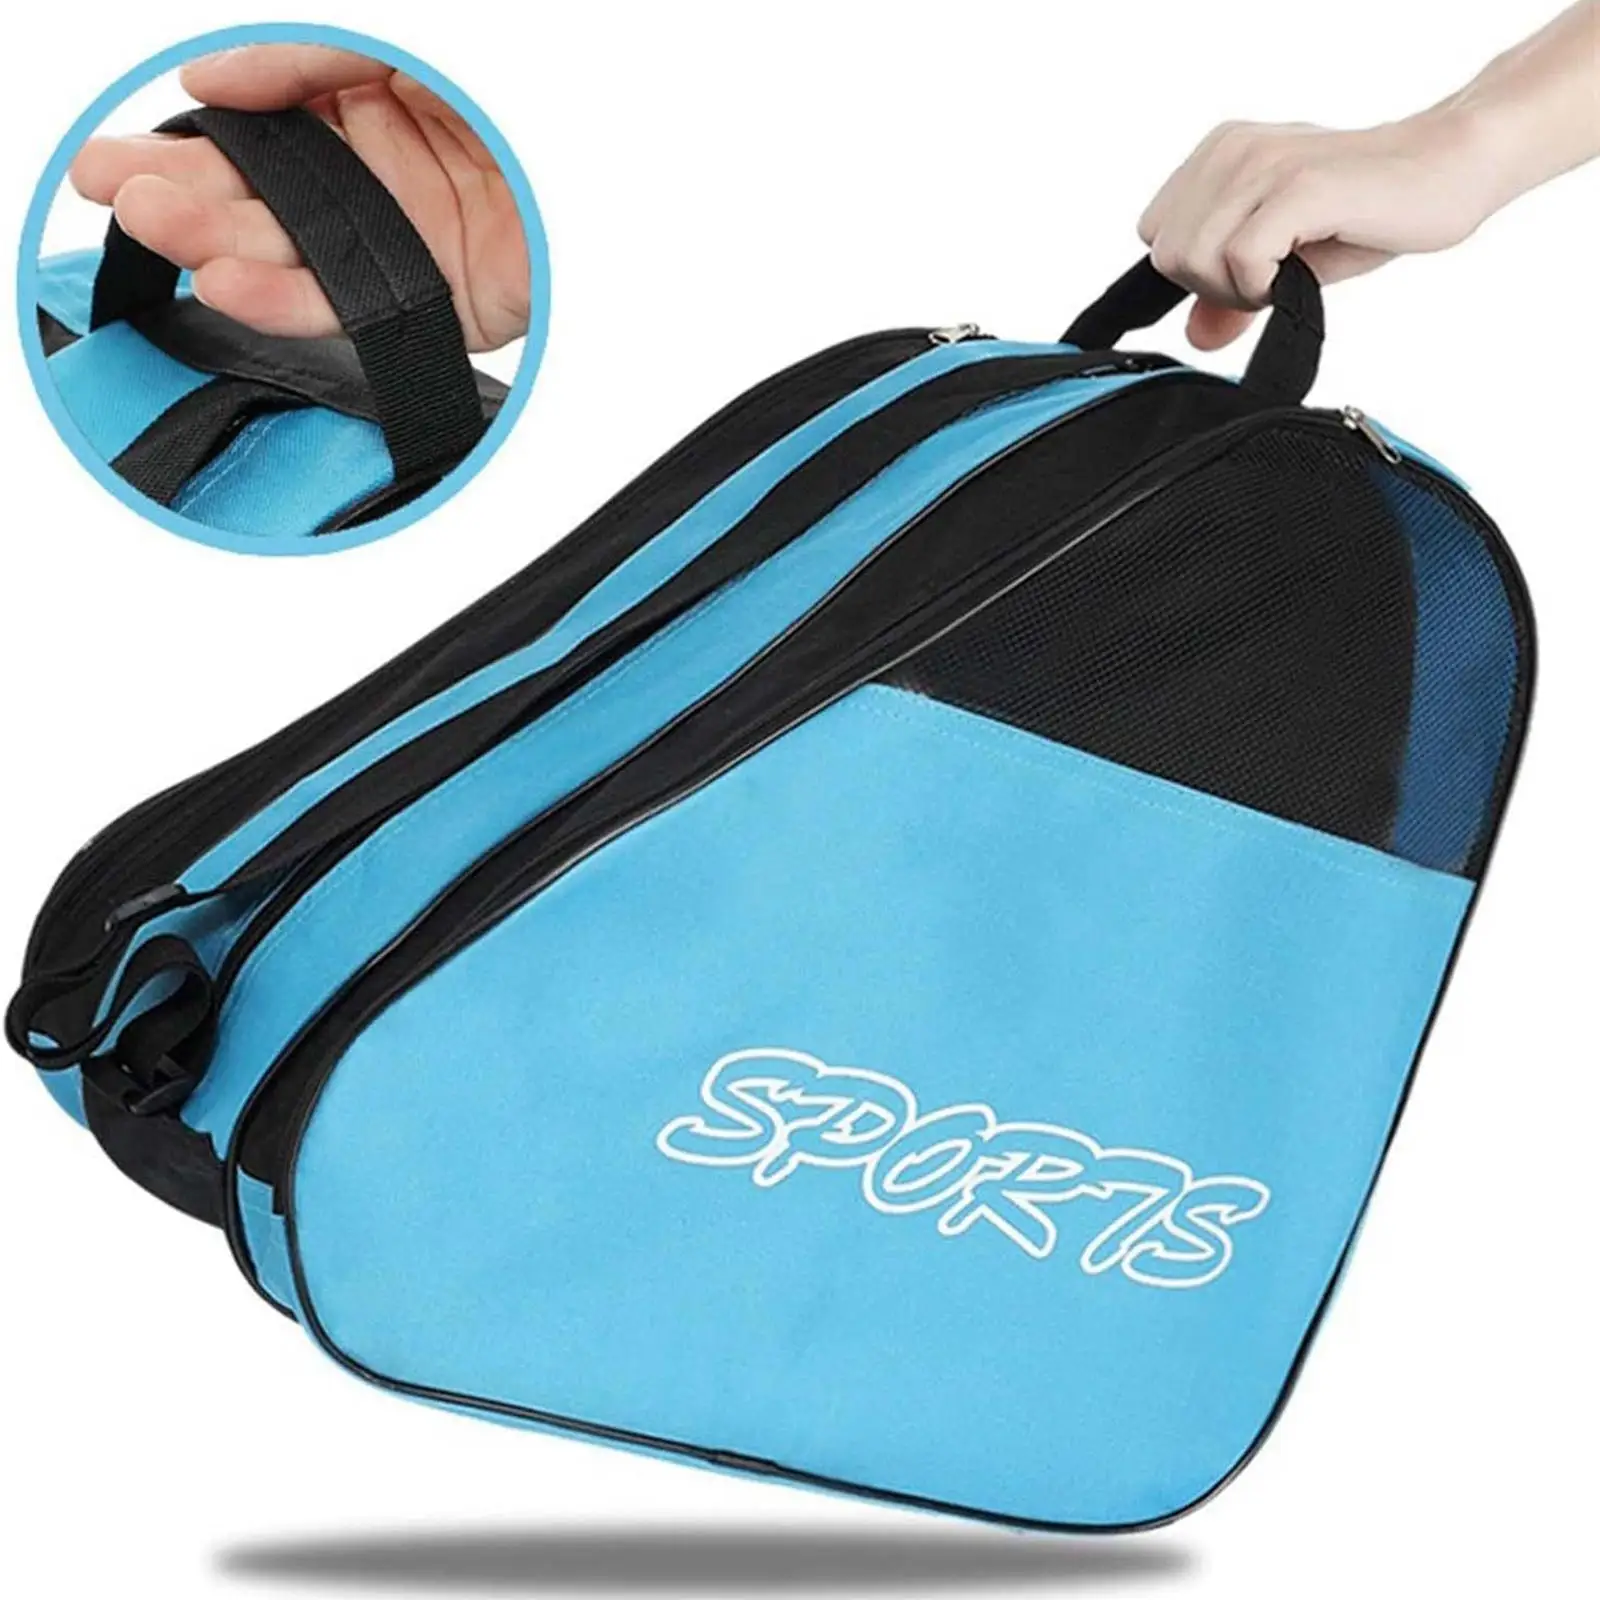 Roller Skates Bag Adjustable Shoulder Strap Ice Skates Roller Skating Bag for Ice Hockey Skate Inline Skates Figure Skates